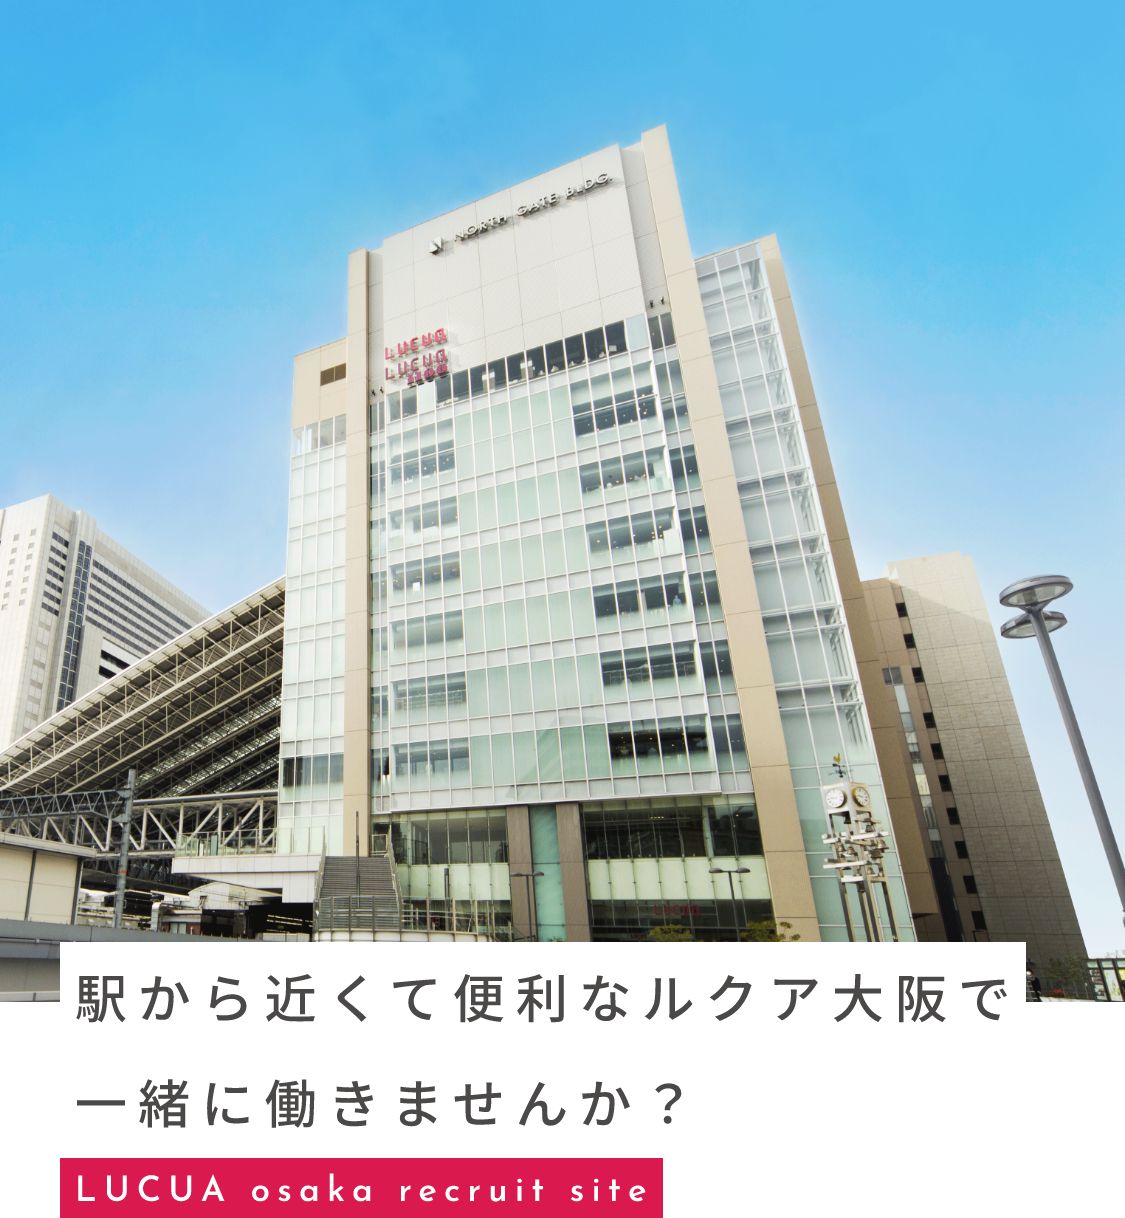 駅から近くて便利なルクア大阪で一緒に働きませんか？ LUCUA osaka recruit site